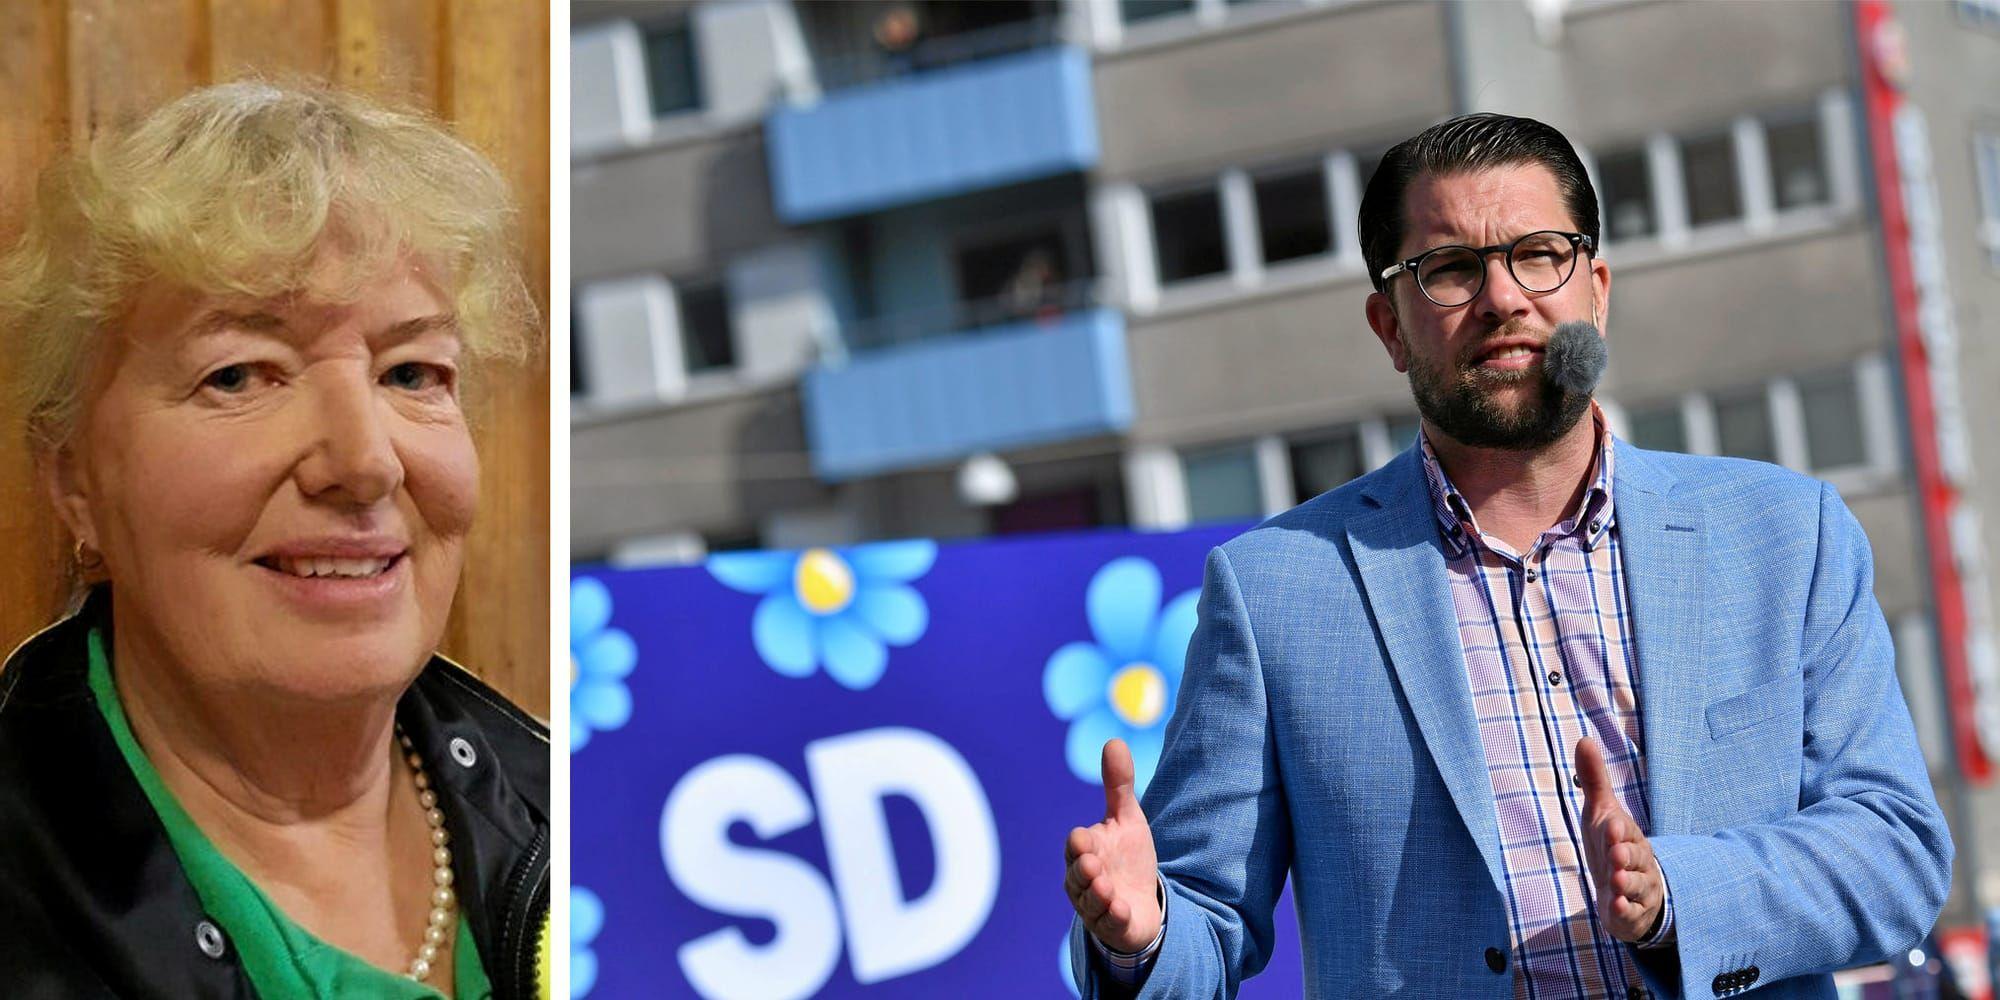 SD:s väljare är inga arbetslösa nazister och rasister, skriver Annica Westdahl Eriksson.